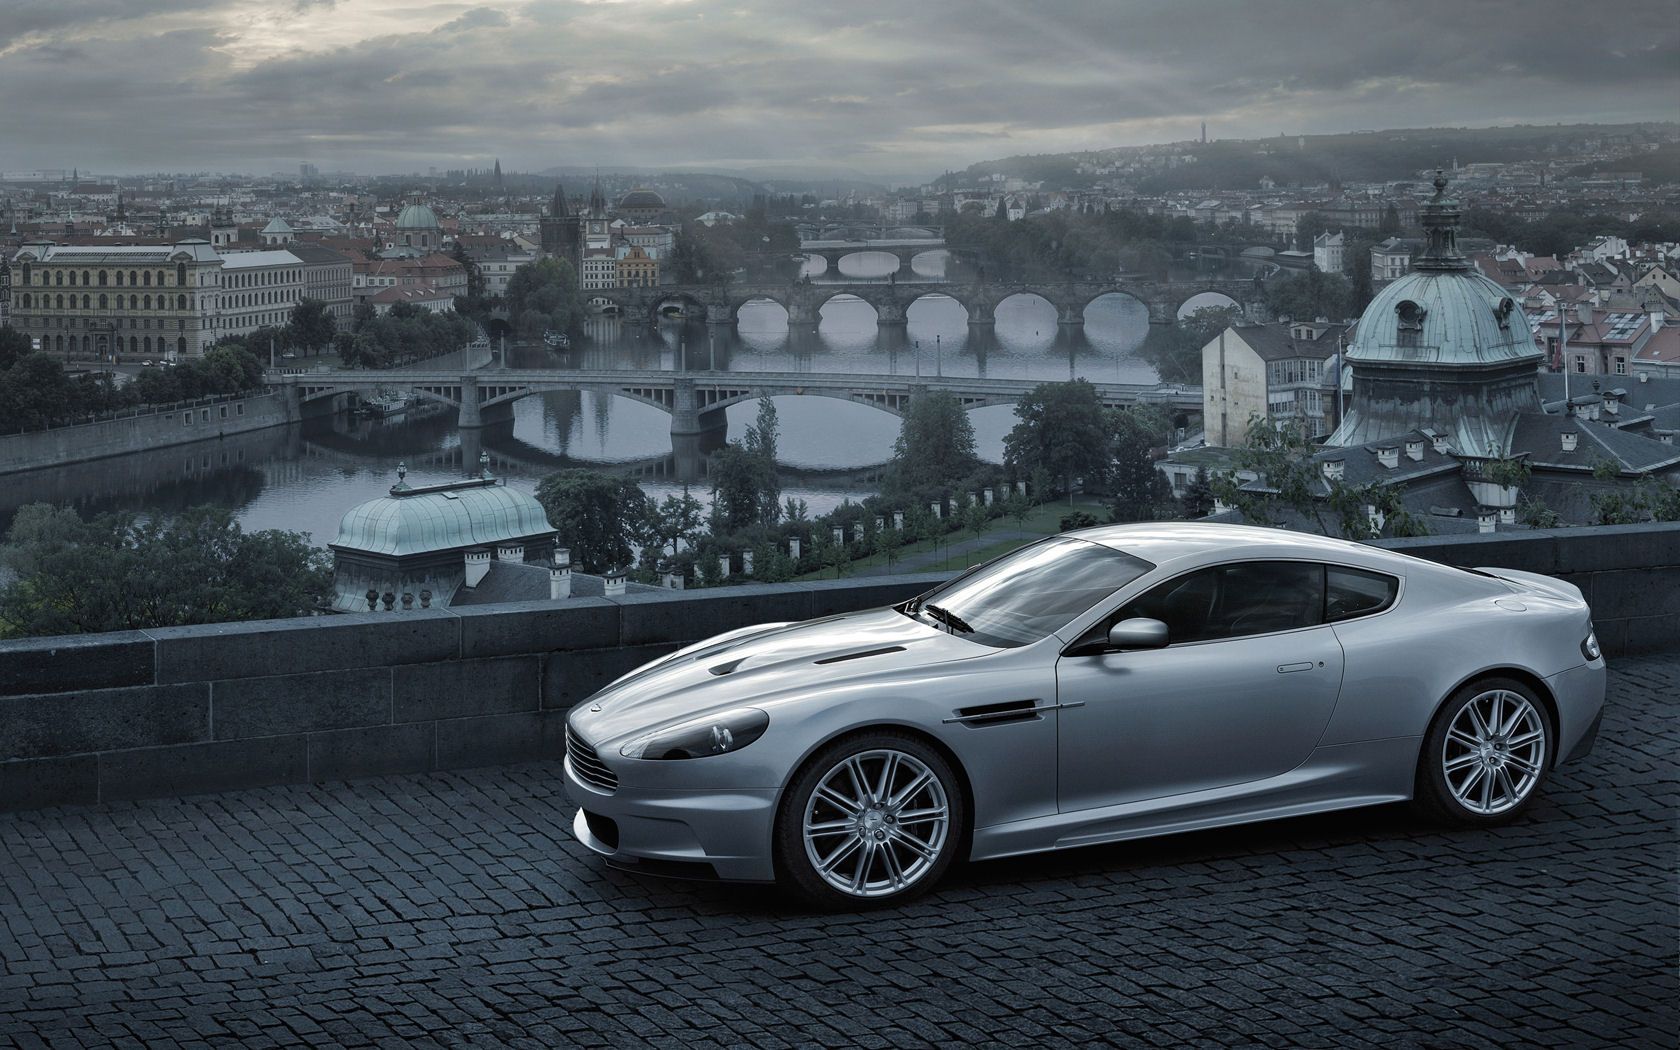 Aston Martin DBS, V12 Coupe, Volante Convertible - Pantalla panorámica gratuita